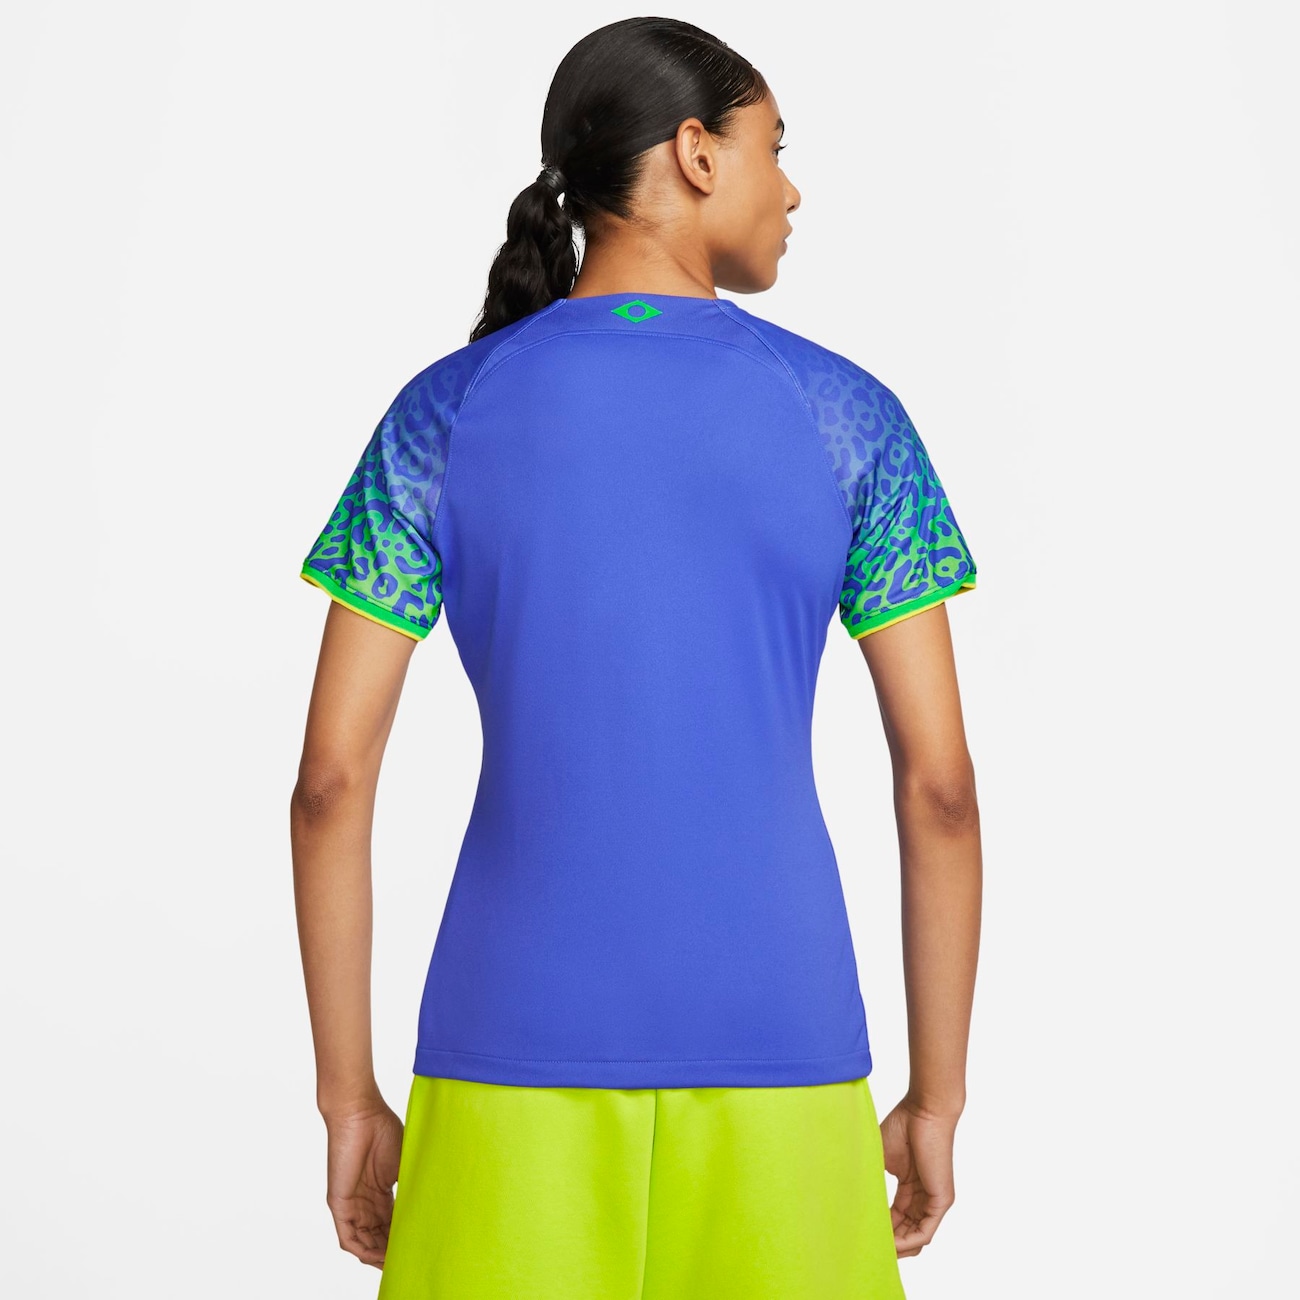 Camisa Nike Seleção Brasil 2014 II w Feminino : Feminino - Camisas